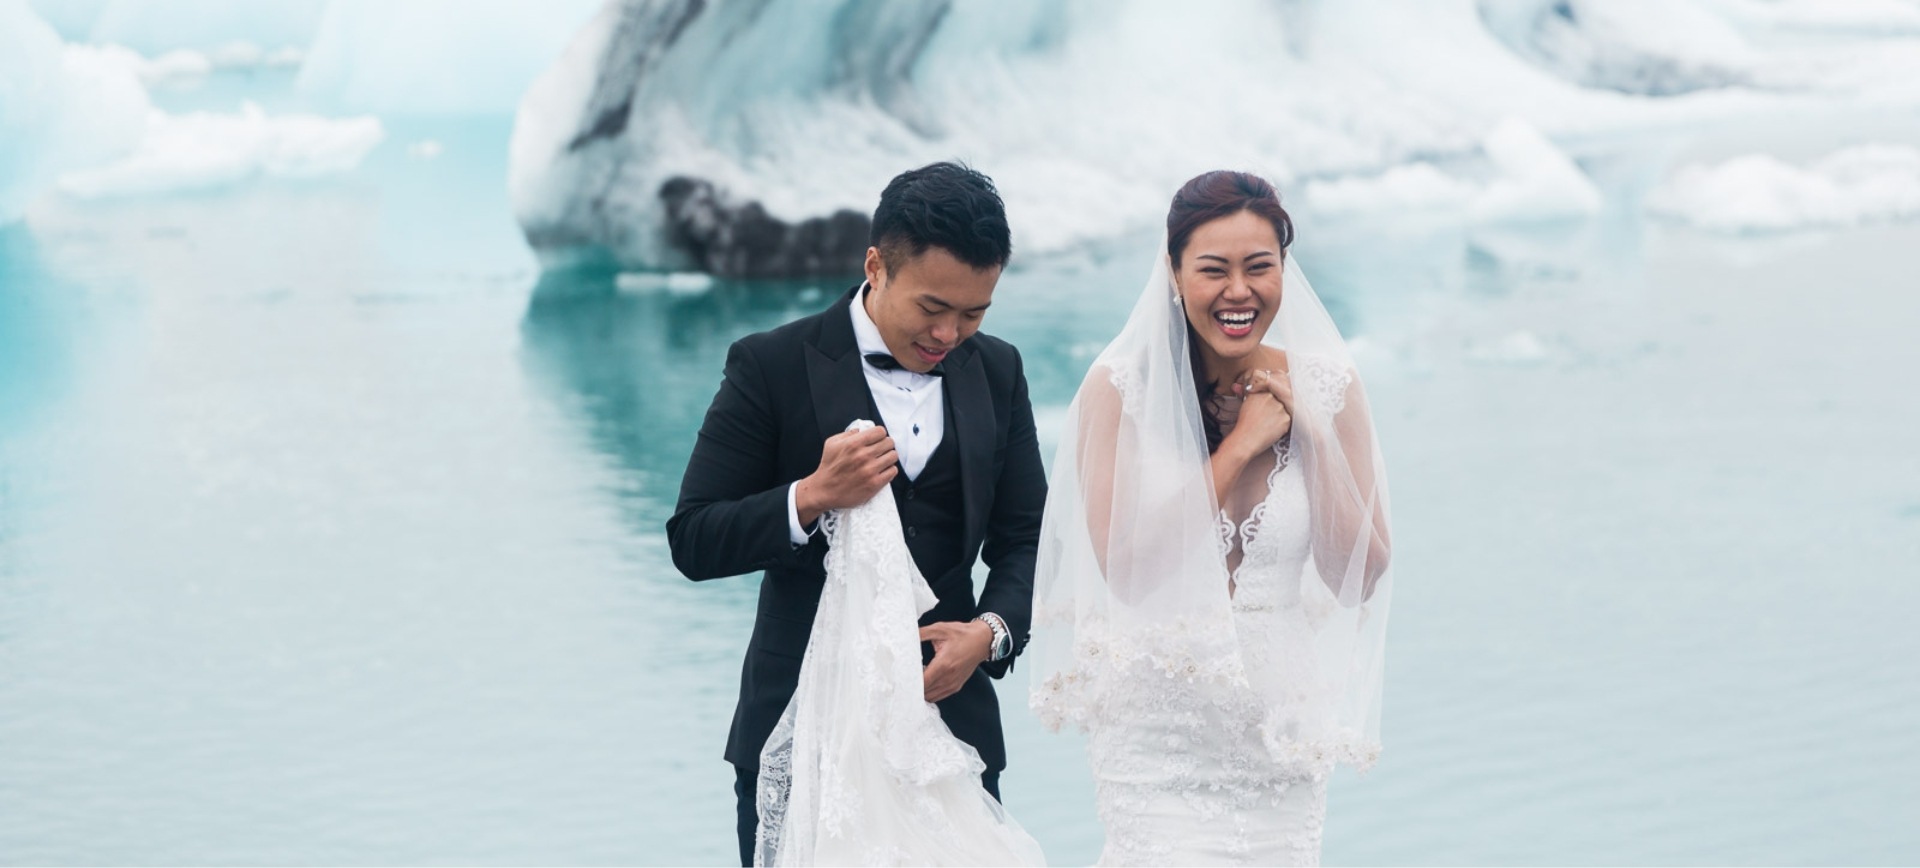 Iceland Wedding Elopement Adventures